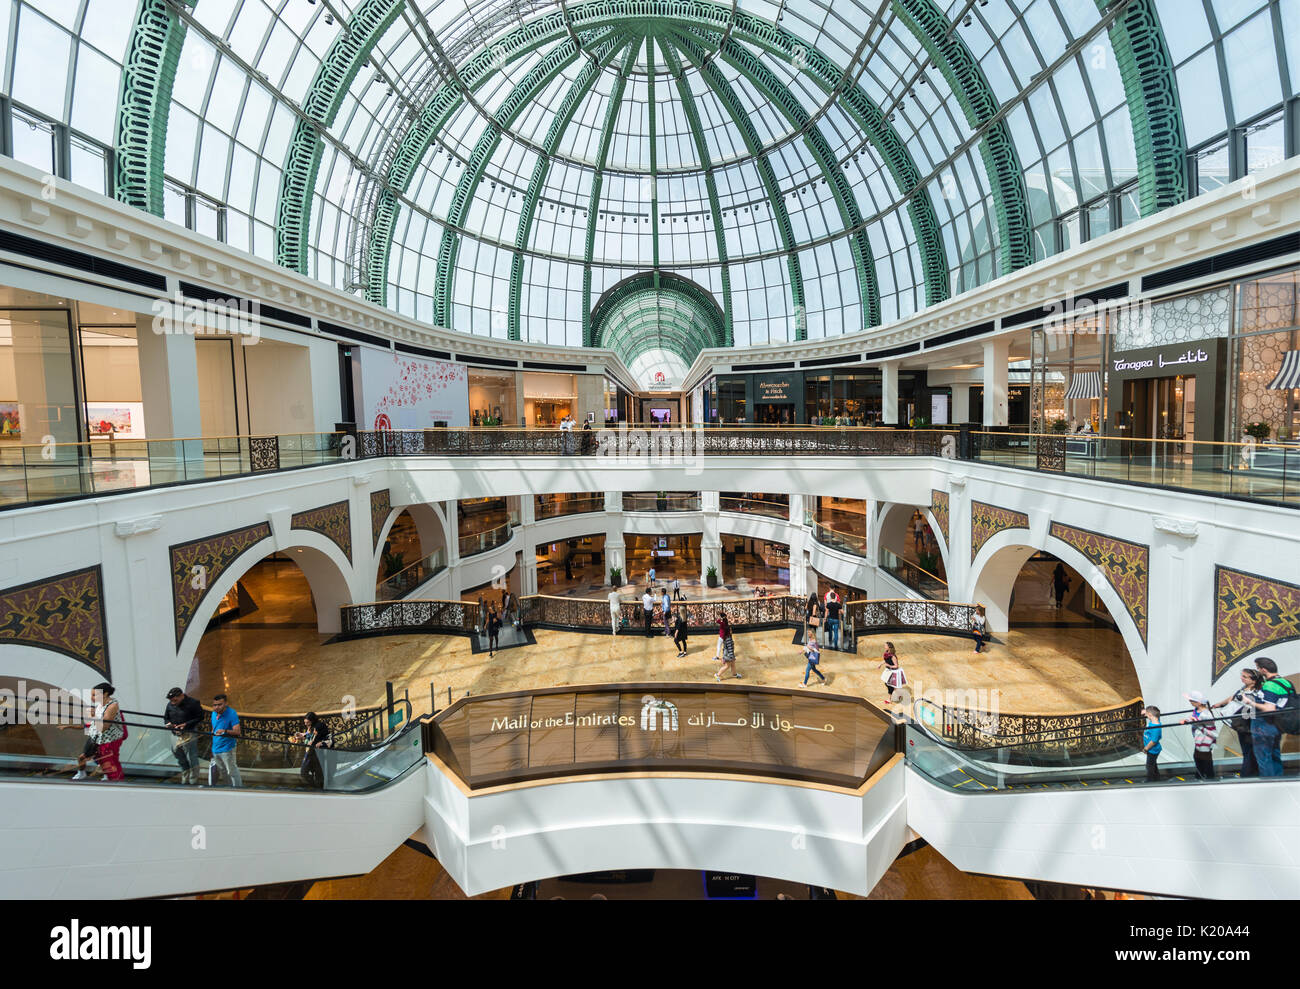 Mall of the Emirates, shopping center, Dubai, United Arab Emirates Stock Photo